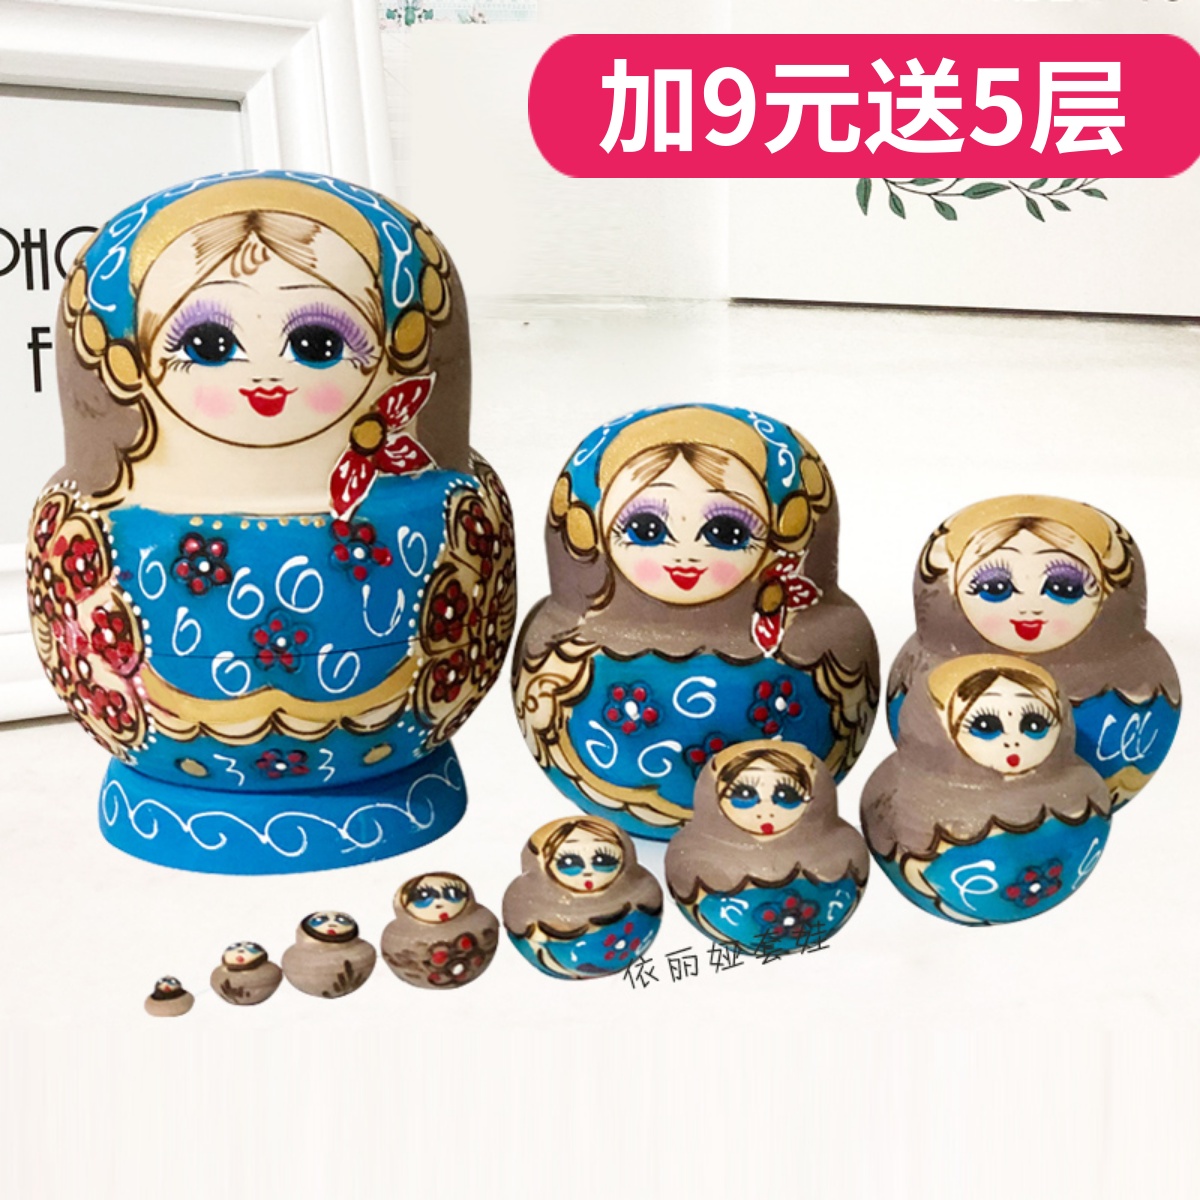 10层俄罗斯套娃玩具手工烙花椴木儿童益智礼品创意礼物旅游纪念品